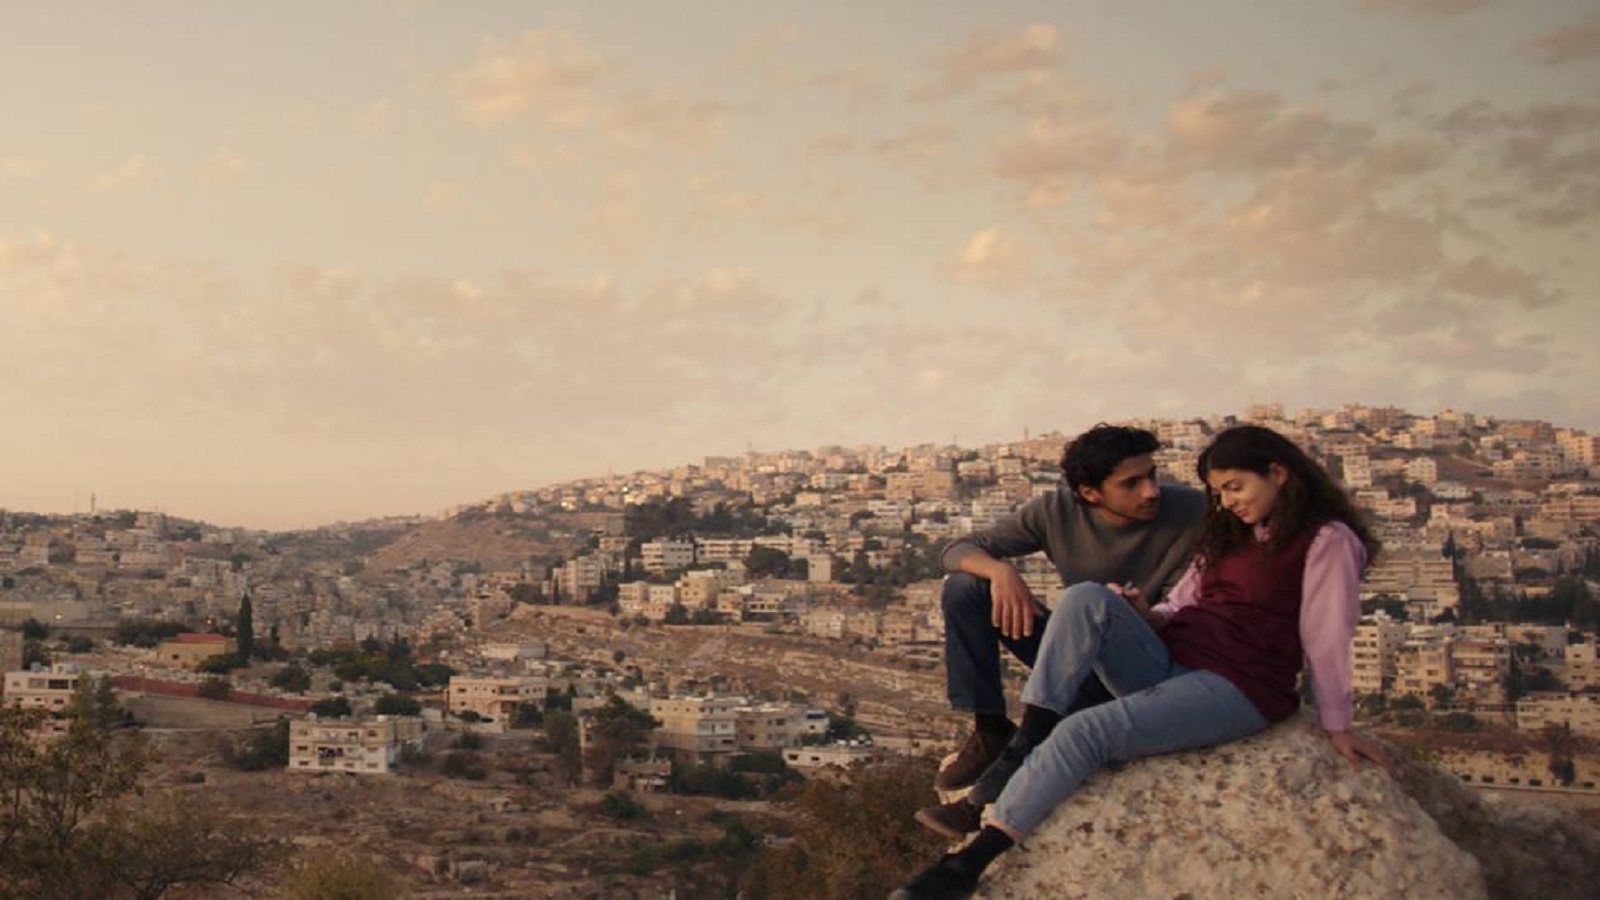 صوّر الفيلم في الأردن بطاقم تمثيل فلسطيني - أردني.